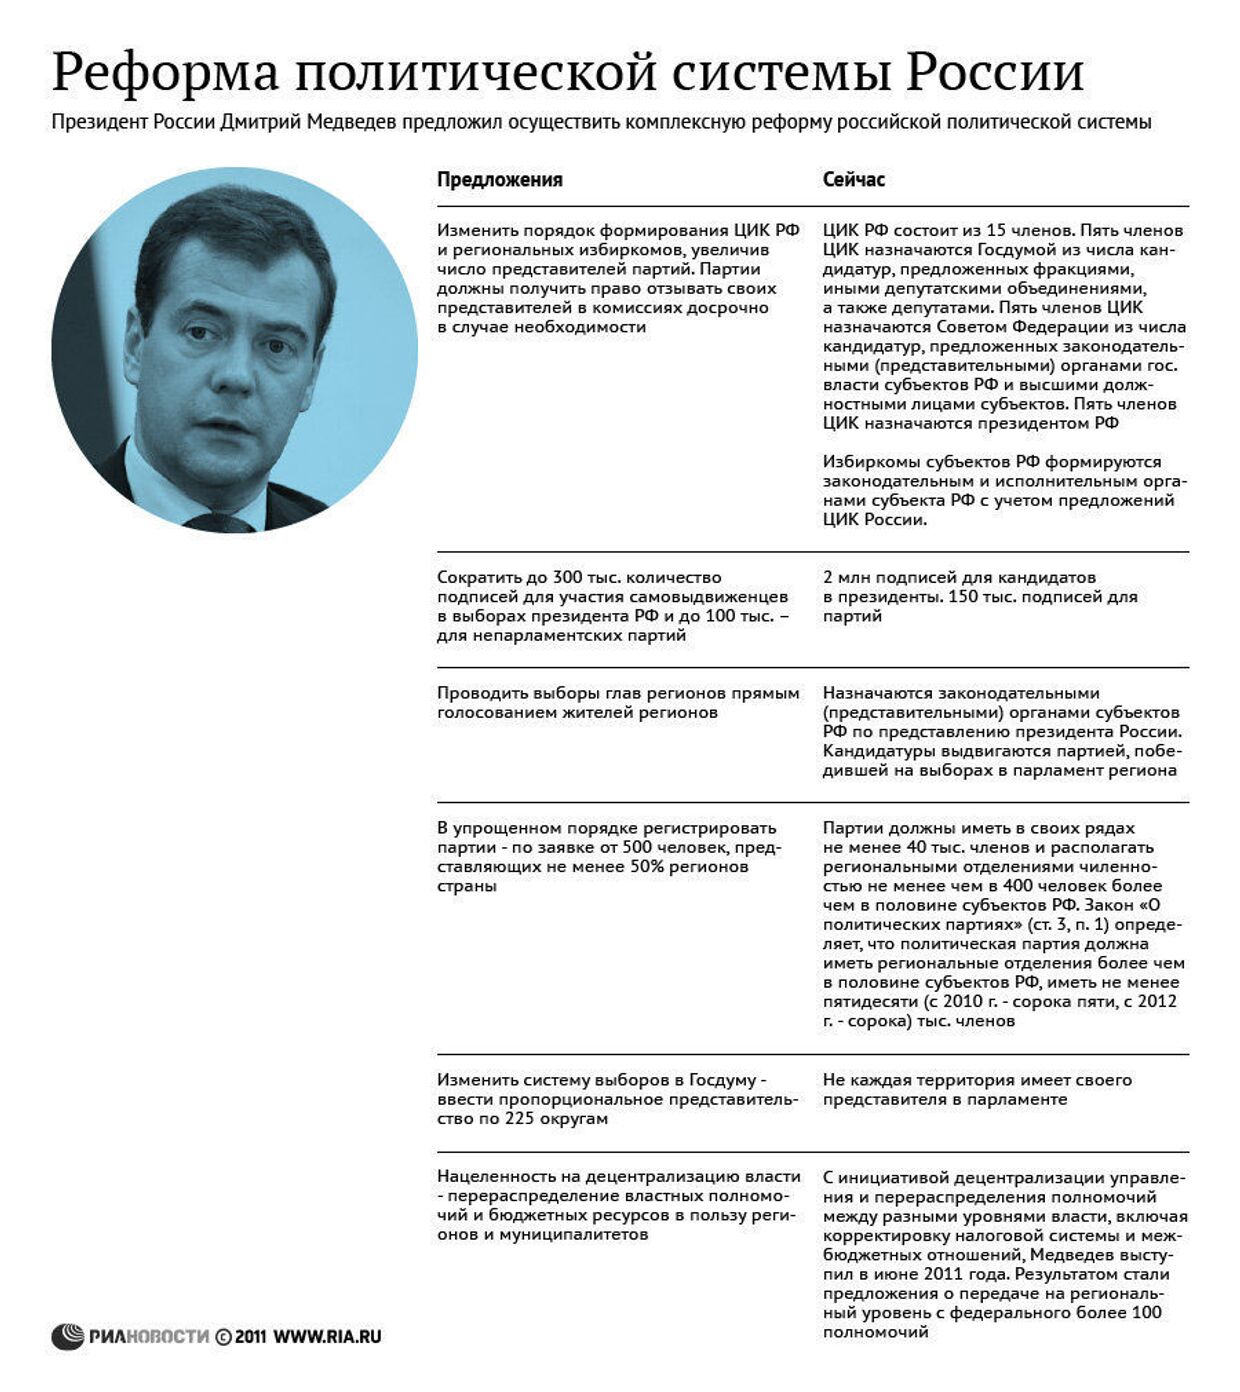 Предложения Медведева по реформированию политической системы РФ